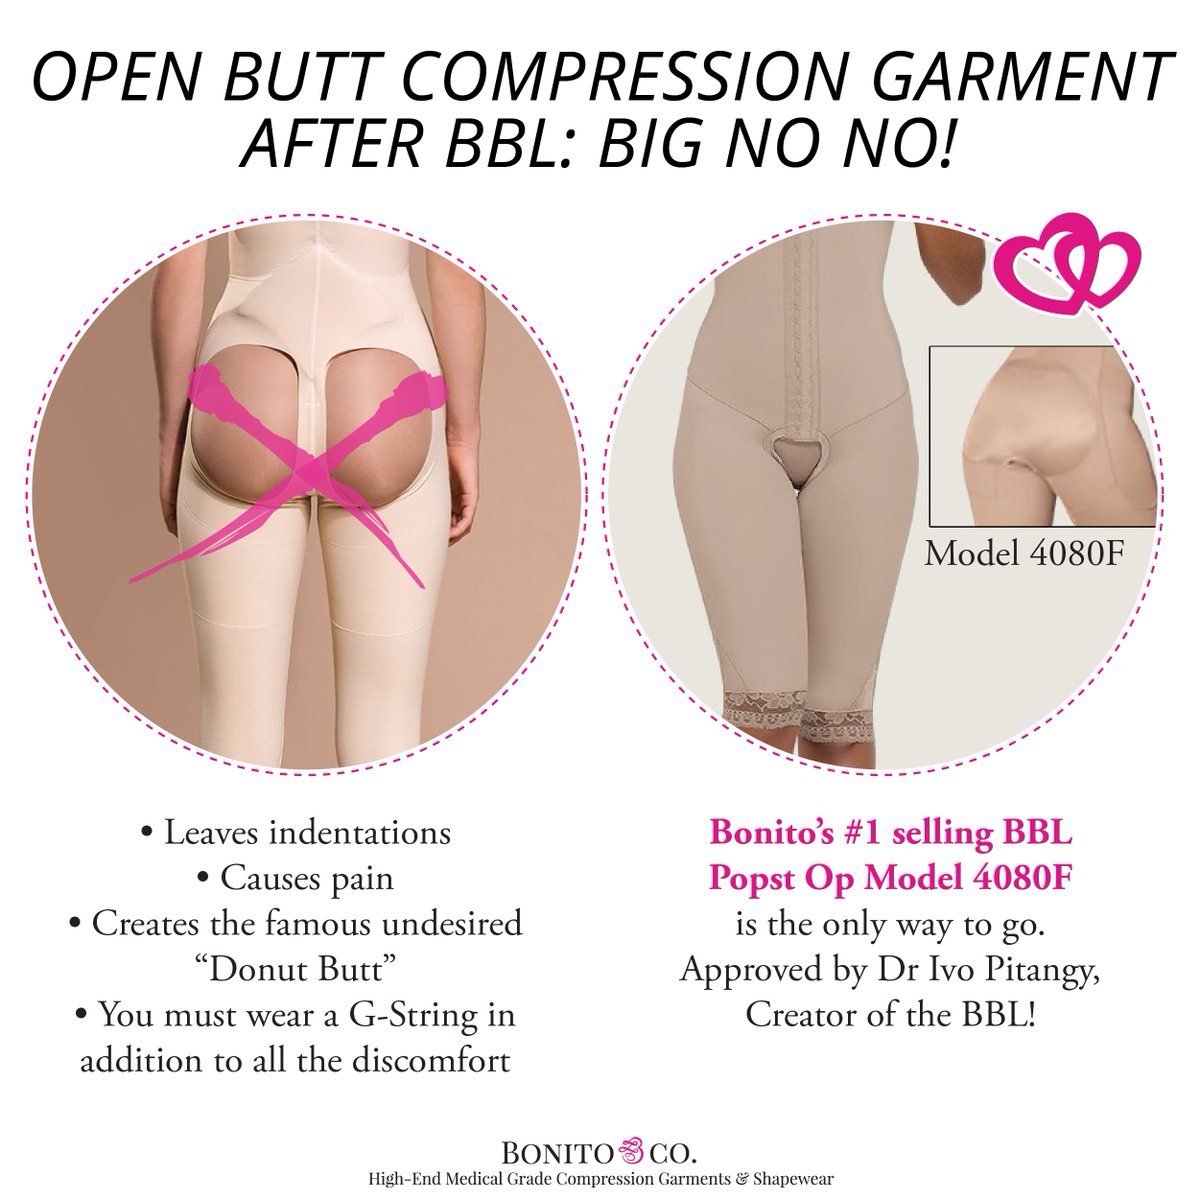 Bonito & Co. on X: Open butt Compression Garment after BBL. Big no no!  #compressiongarments #compressiongarment #bestcompressiongarments #fajas  #faja #medicalgradecompression #postop #postopcare #plasticsurgery  #compressionbra #BBL